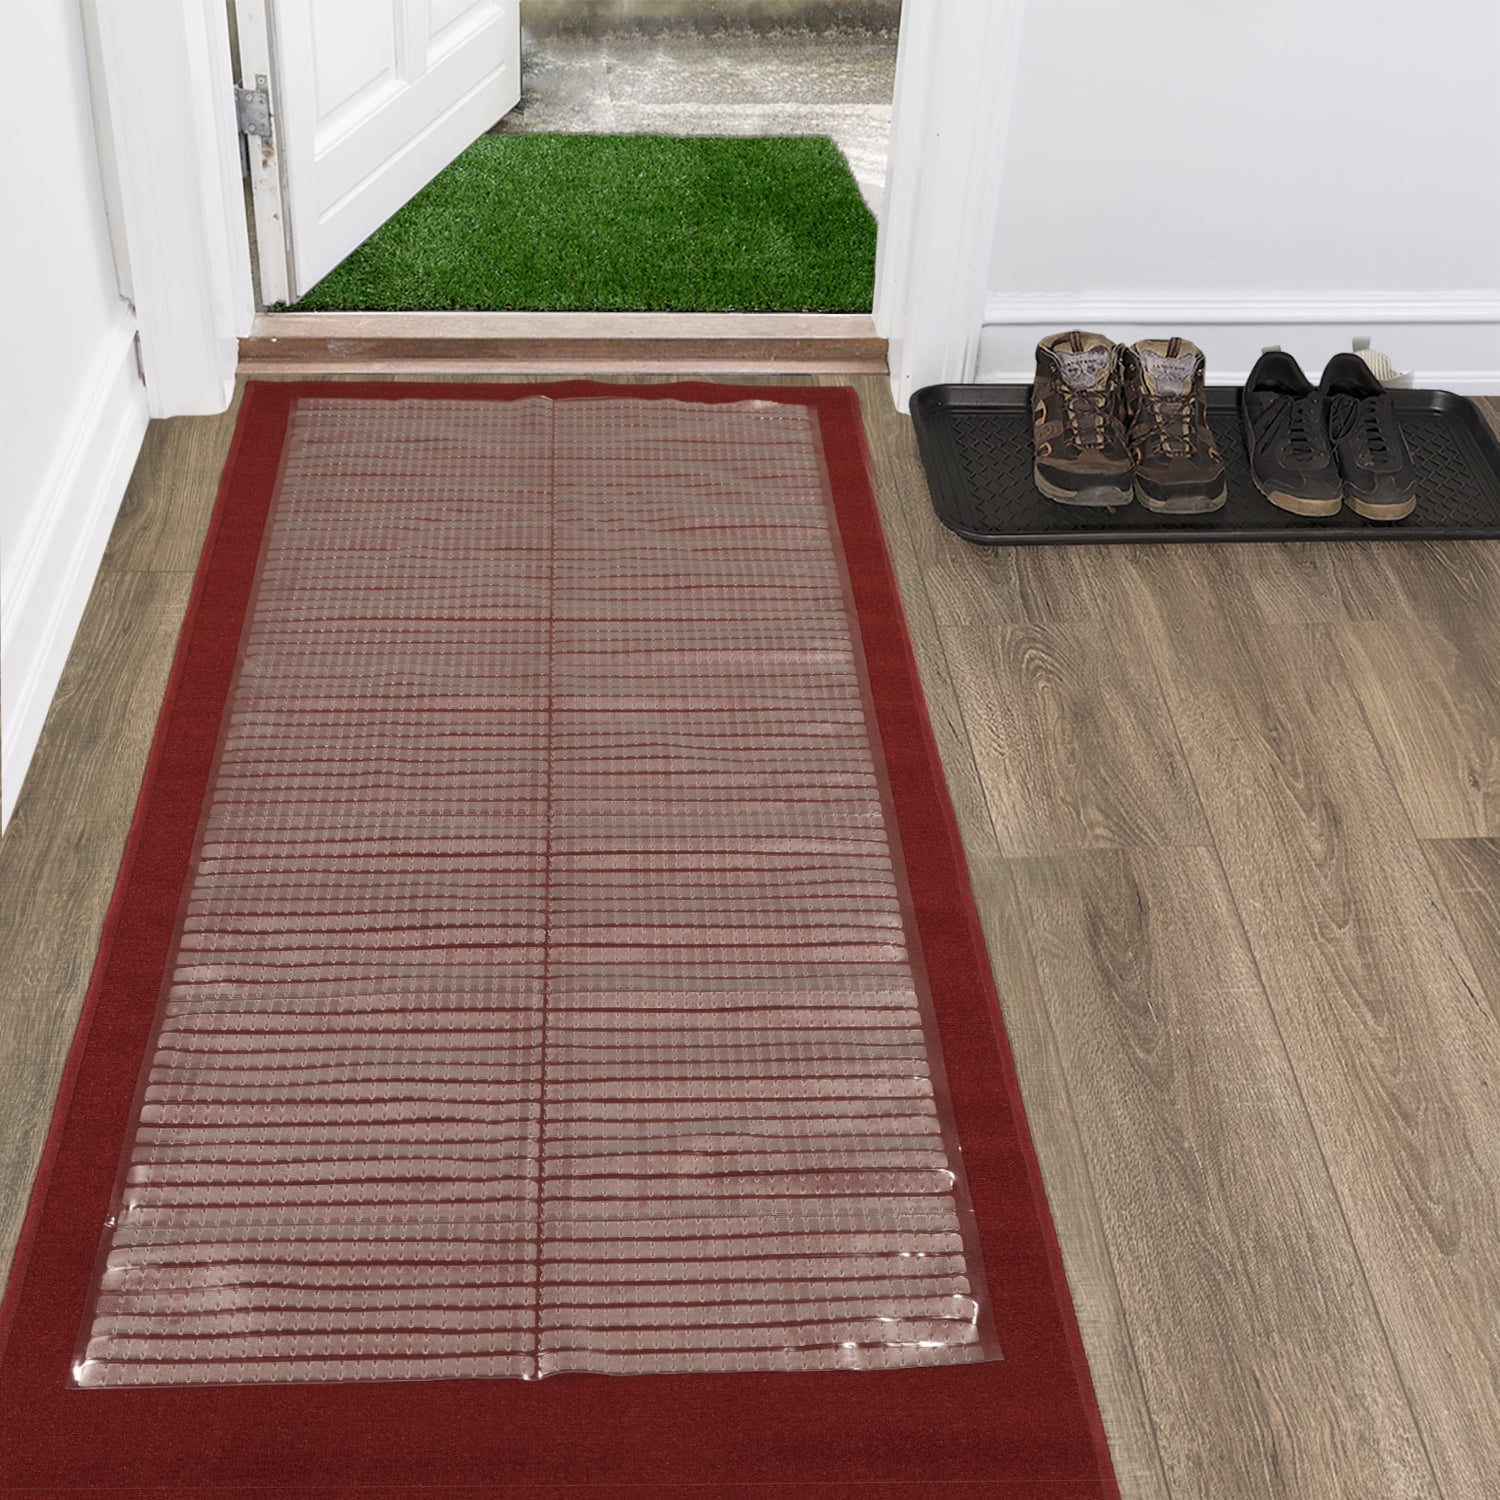 Berrnourhome Multi Grip Carpet, Clear Plastic Hardwood Floor Runners